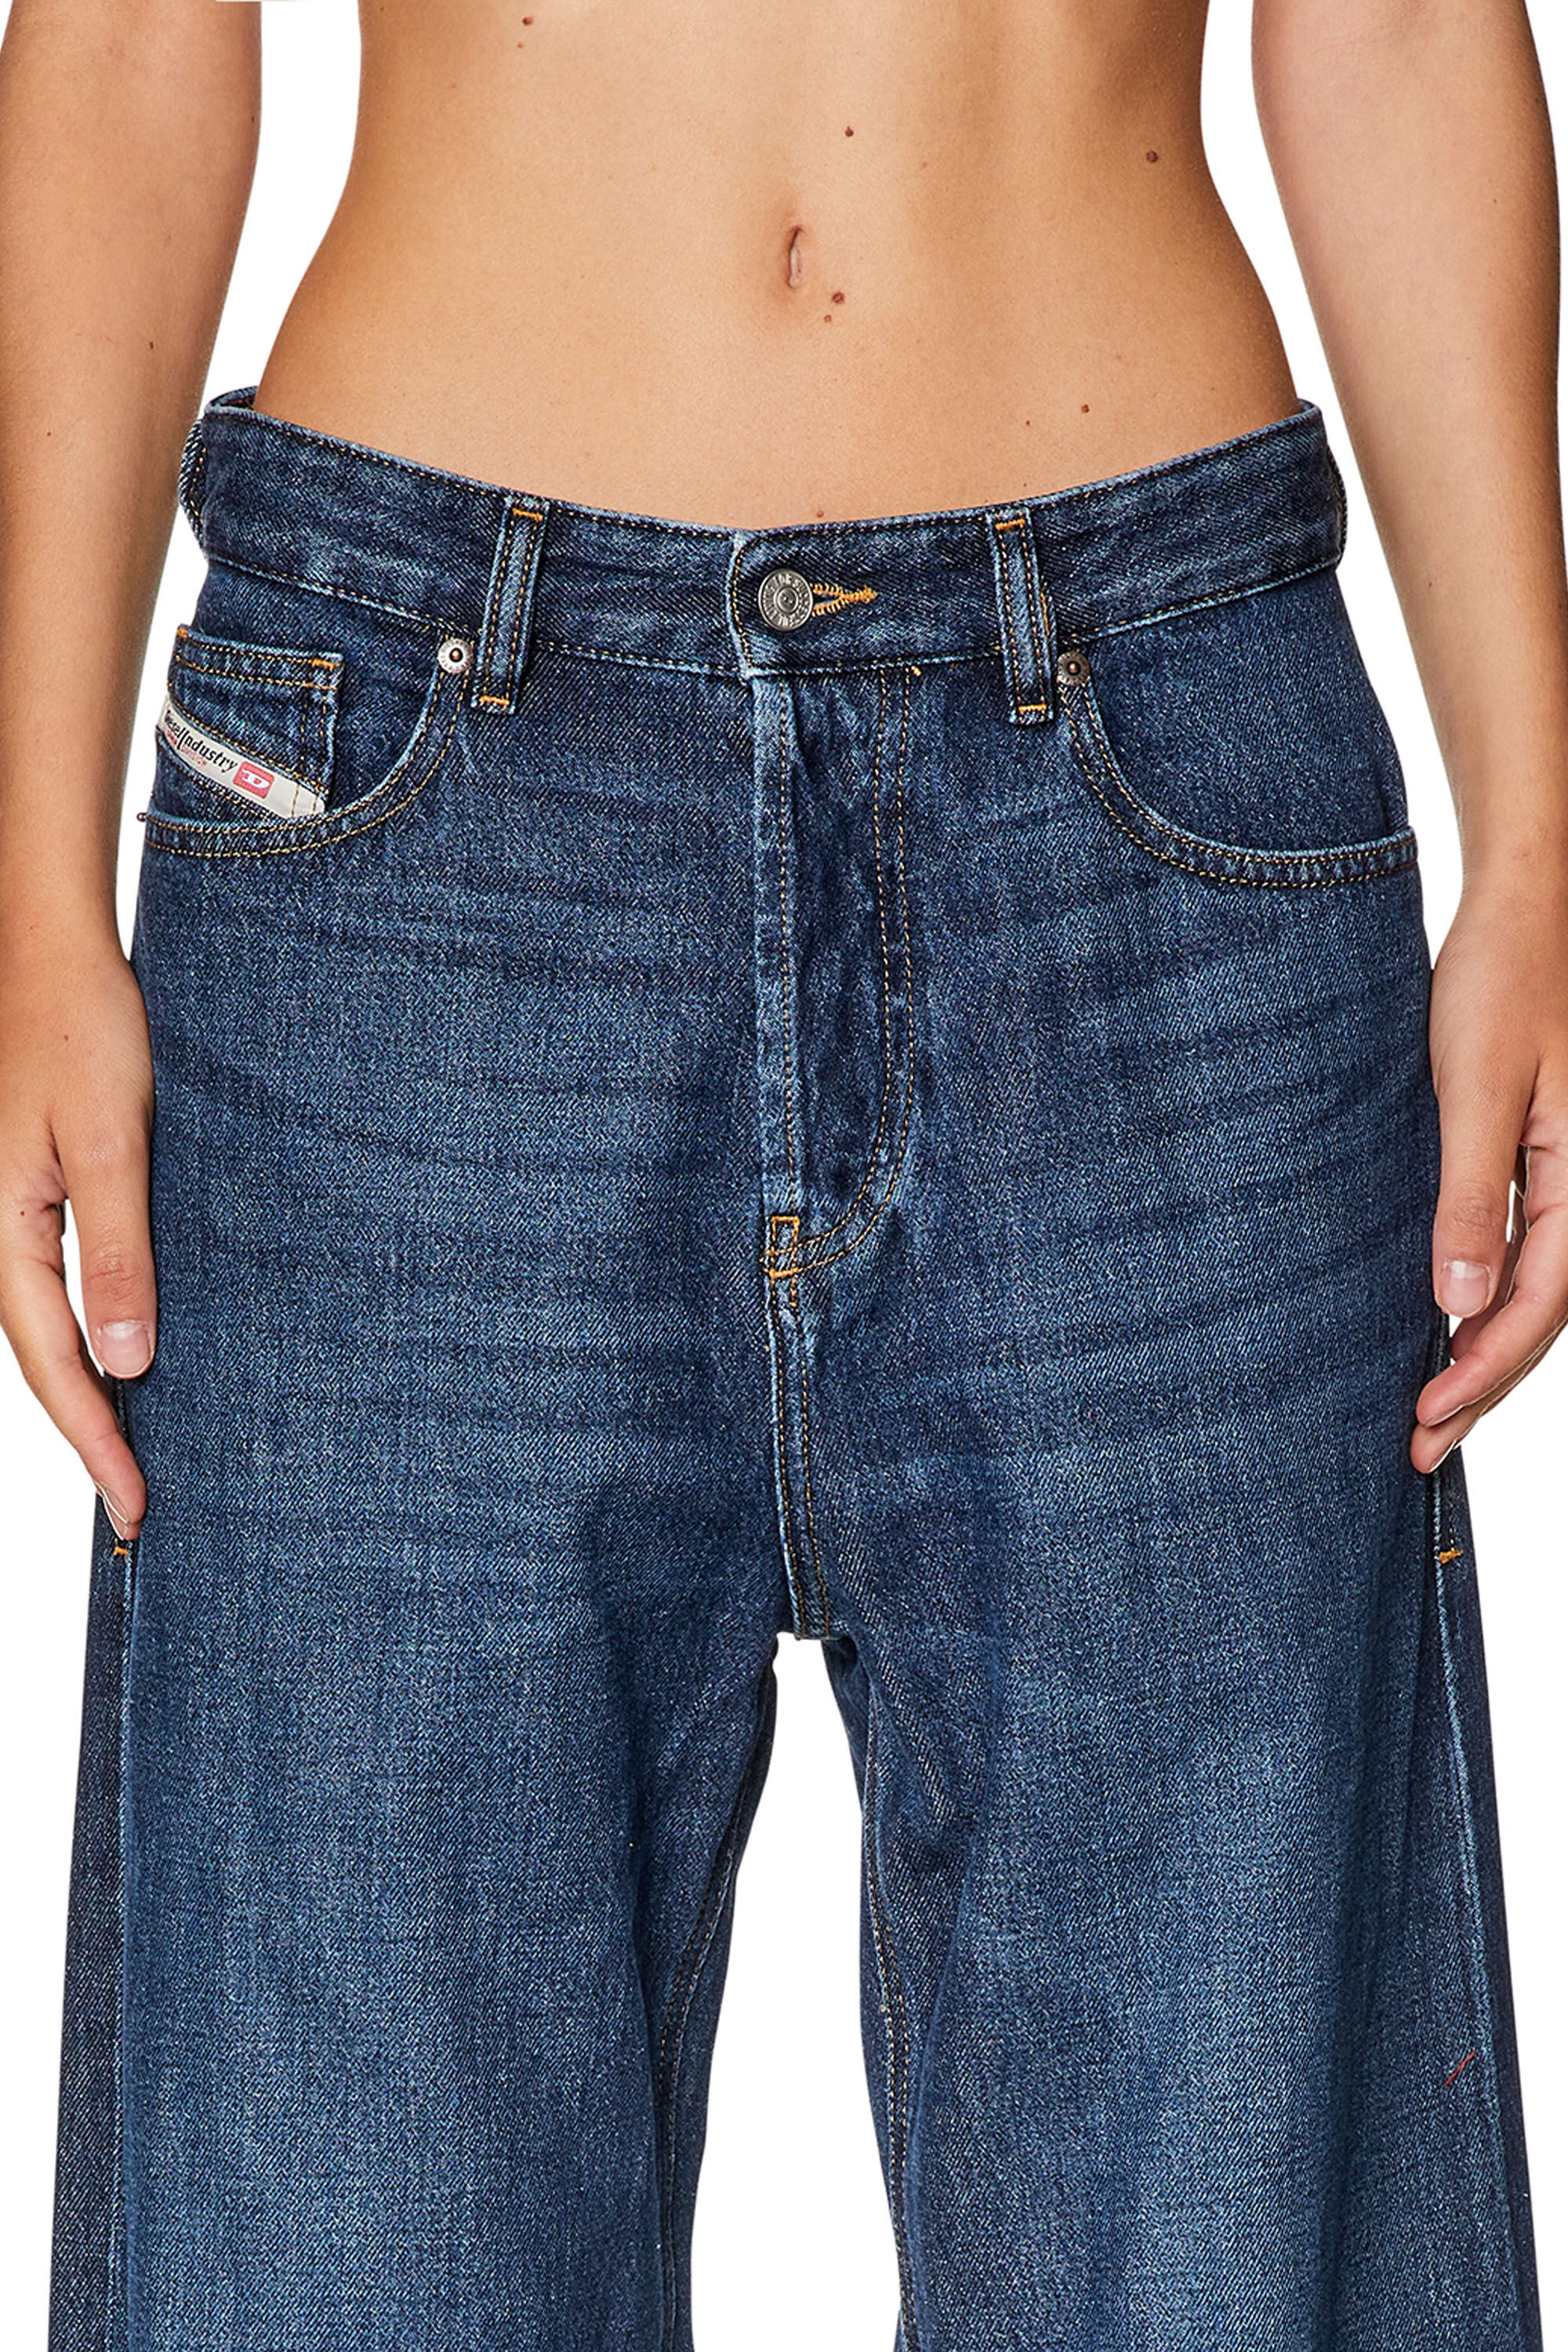 【格安購入】DIESEL D-SIRE straight jeans 1996 OEMAN パンツ